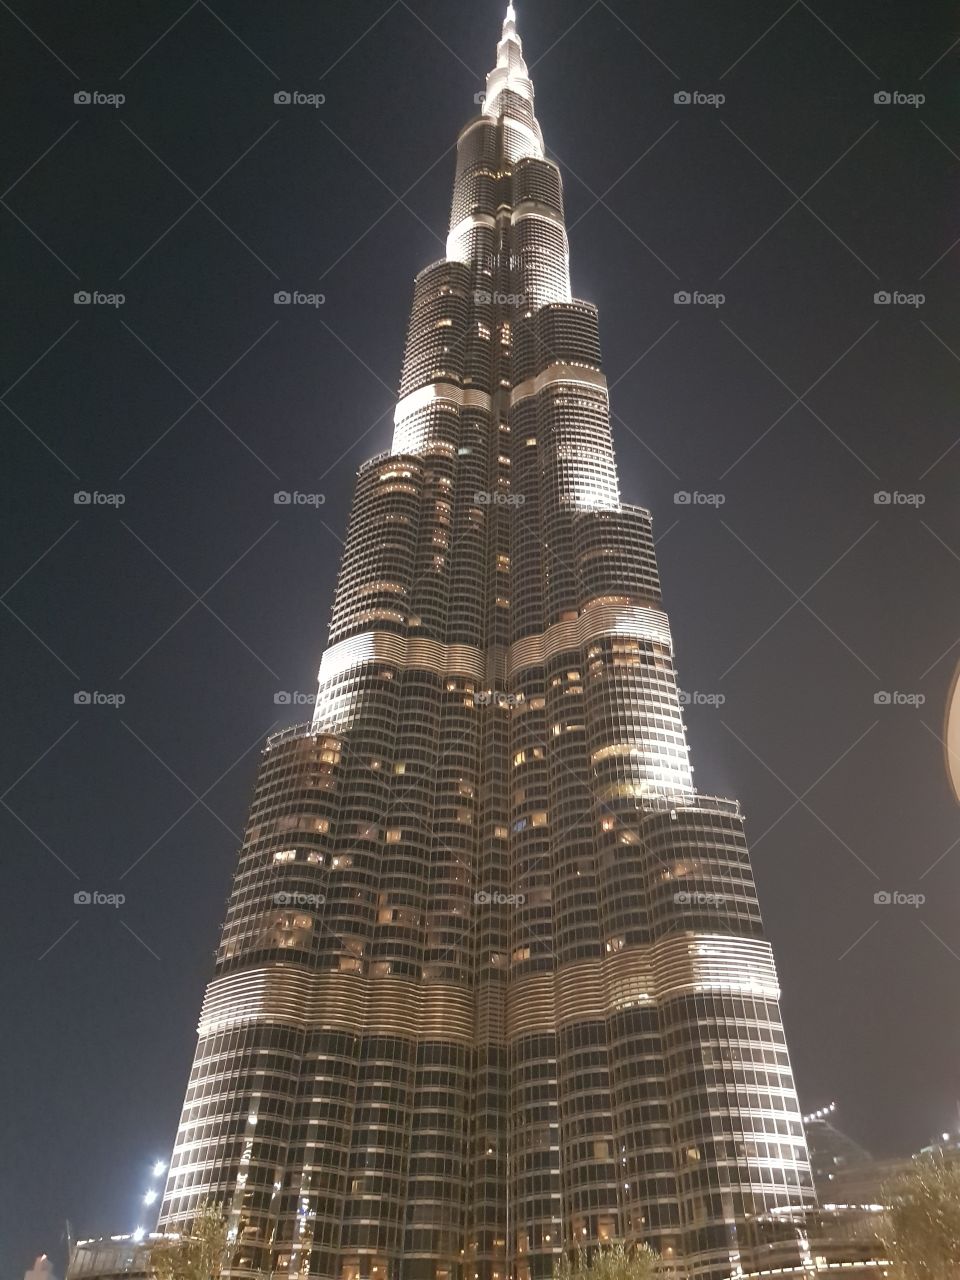 Burj Khalifa höchste Gebäude der Welt!📸🏙